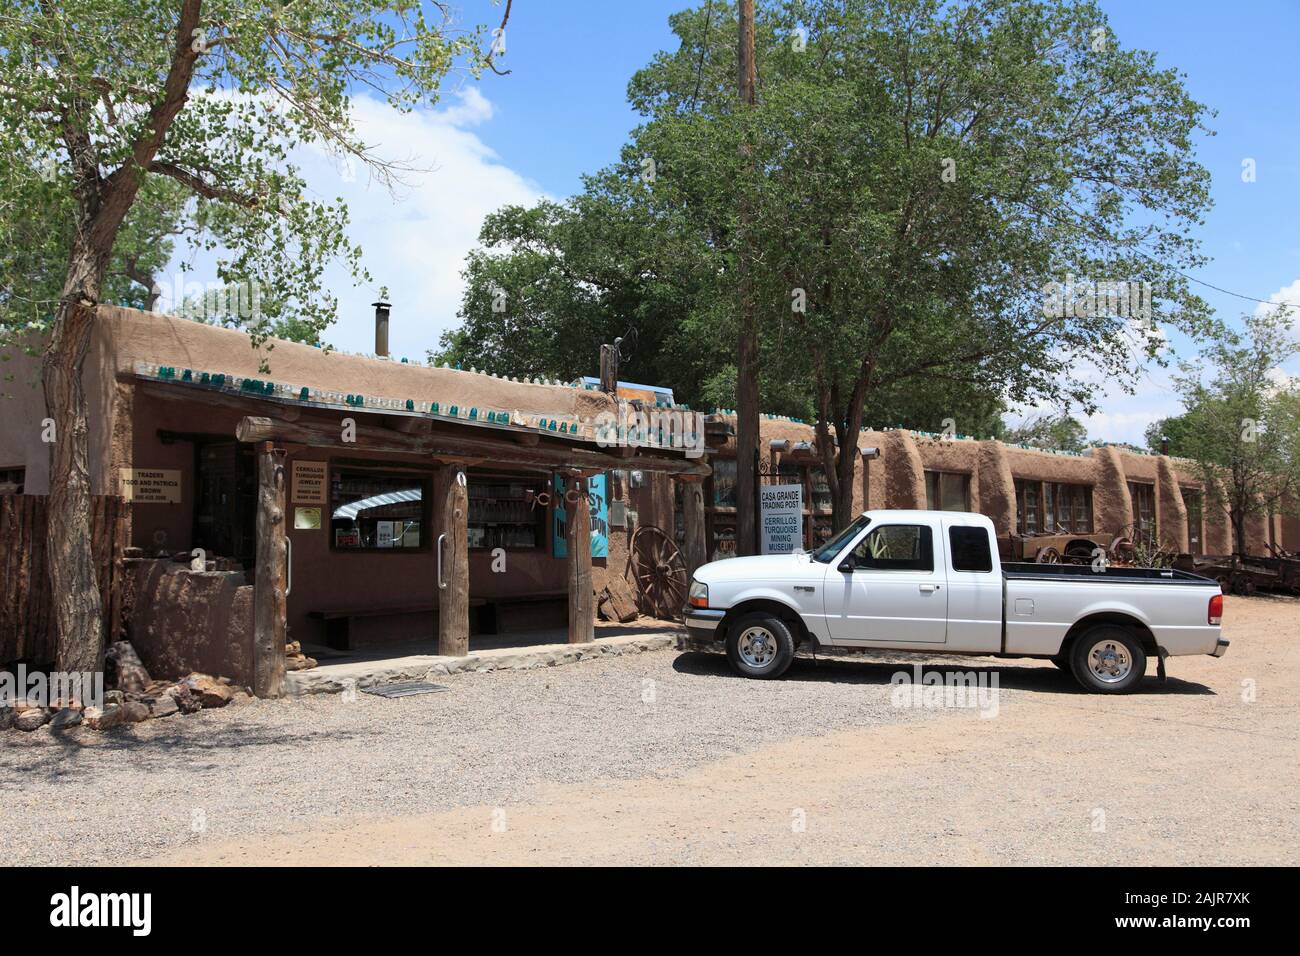 Casa Grande Poste de traite et d'exploitation minière Turquoise Cerrillos Cerrillos, musée, ancienne cité minière, la Turquoise Trail, New Mexico, USA Banque D'Images